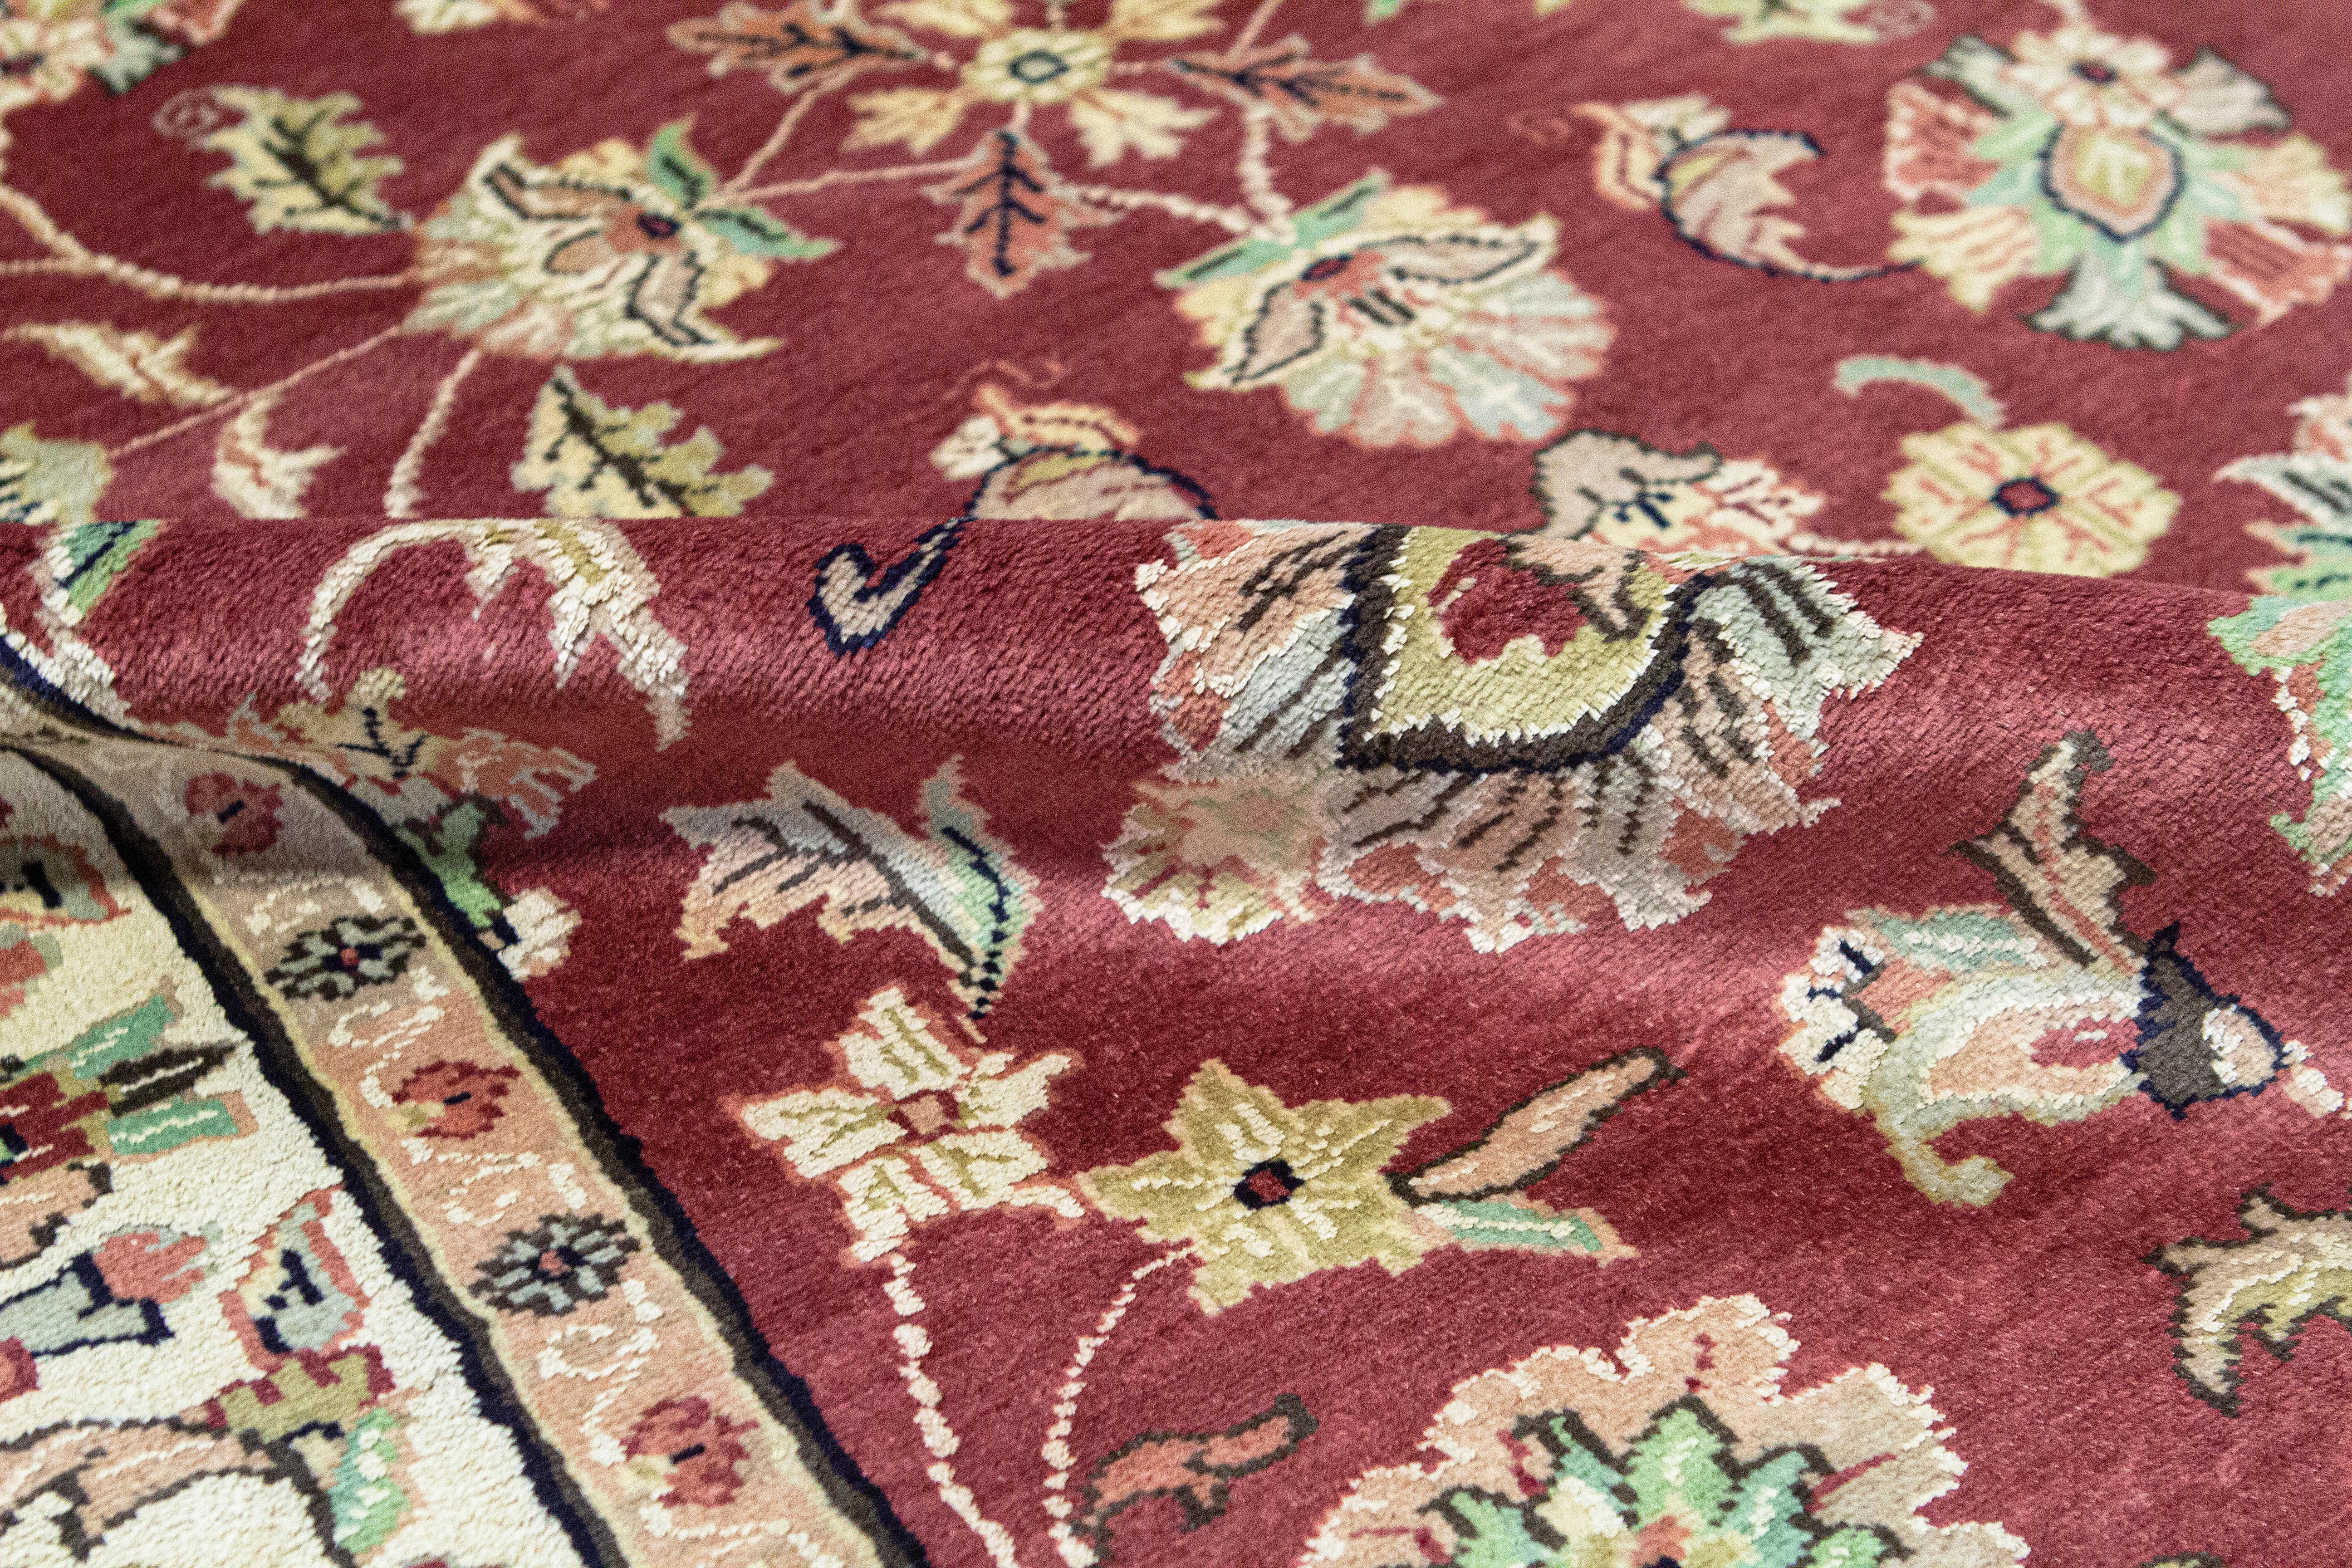 Cet élégant tapis tissé à la main en provenance d'Inde est tissé à partir des meilleures laines et de la soie pour créer une pièce douce et luxueuse qui s'adaptera à de nombreux environnements différents. Mesures : 4'1